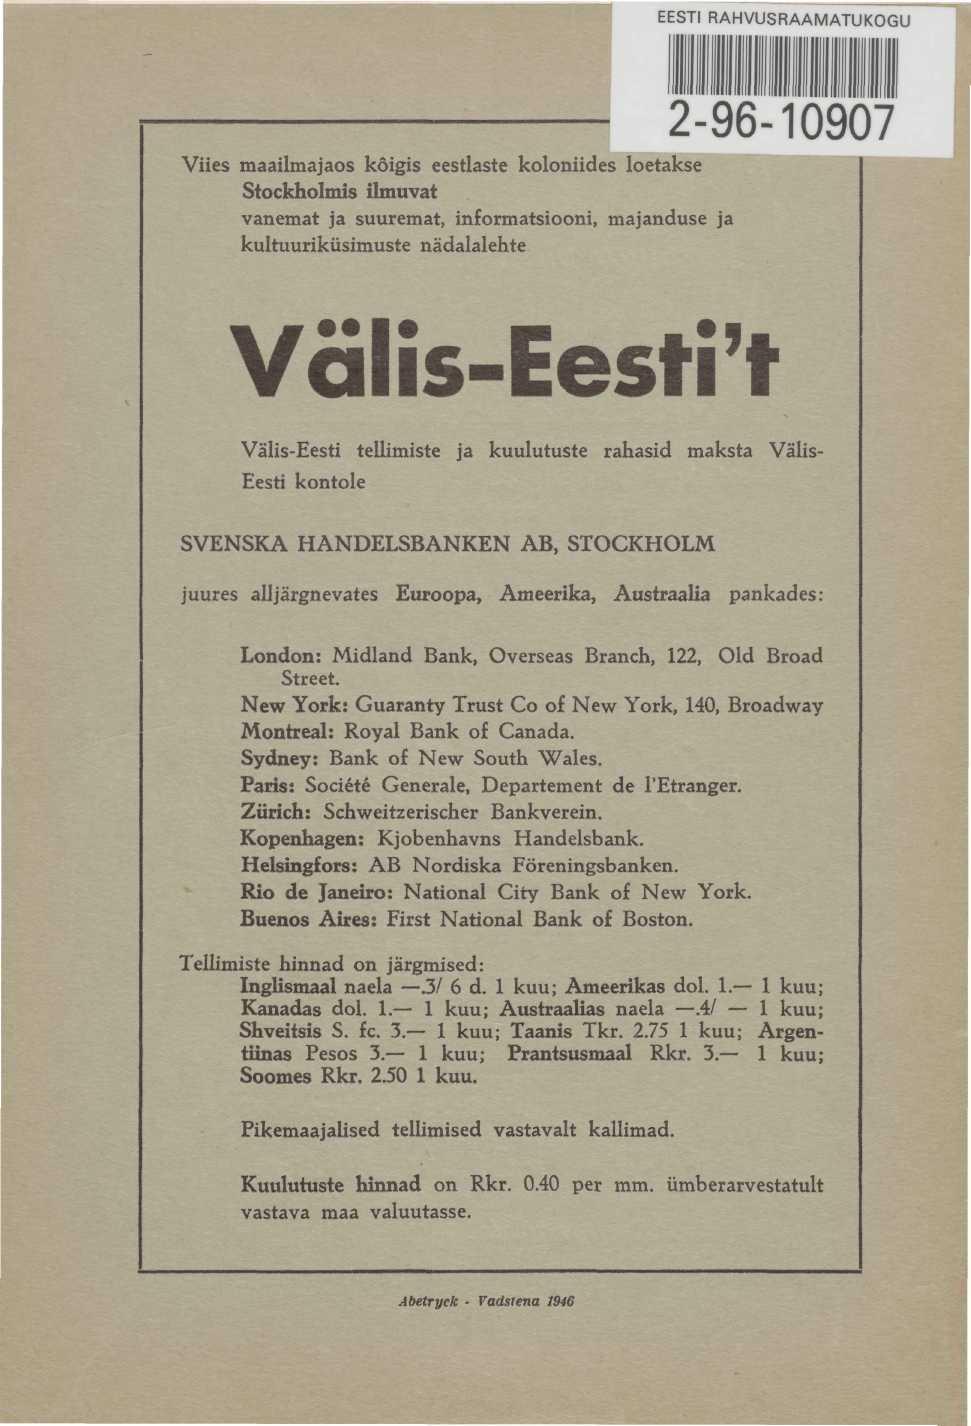 EESTI RAHVUSRAAMATUKOGU 2-96-10907 Viies maailmajaos kõigis eestlaste koloniides loetakse Stockholmis ilmuvat vanemat ja suuremat, informatsiooni, majanduse ja kultuuriküsimuste nädalalehte